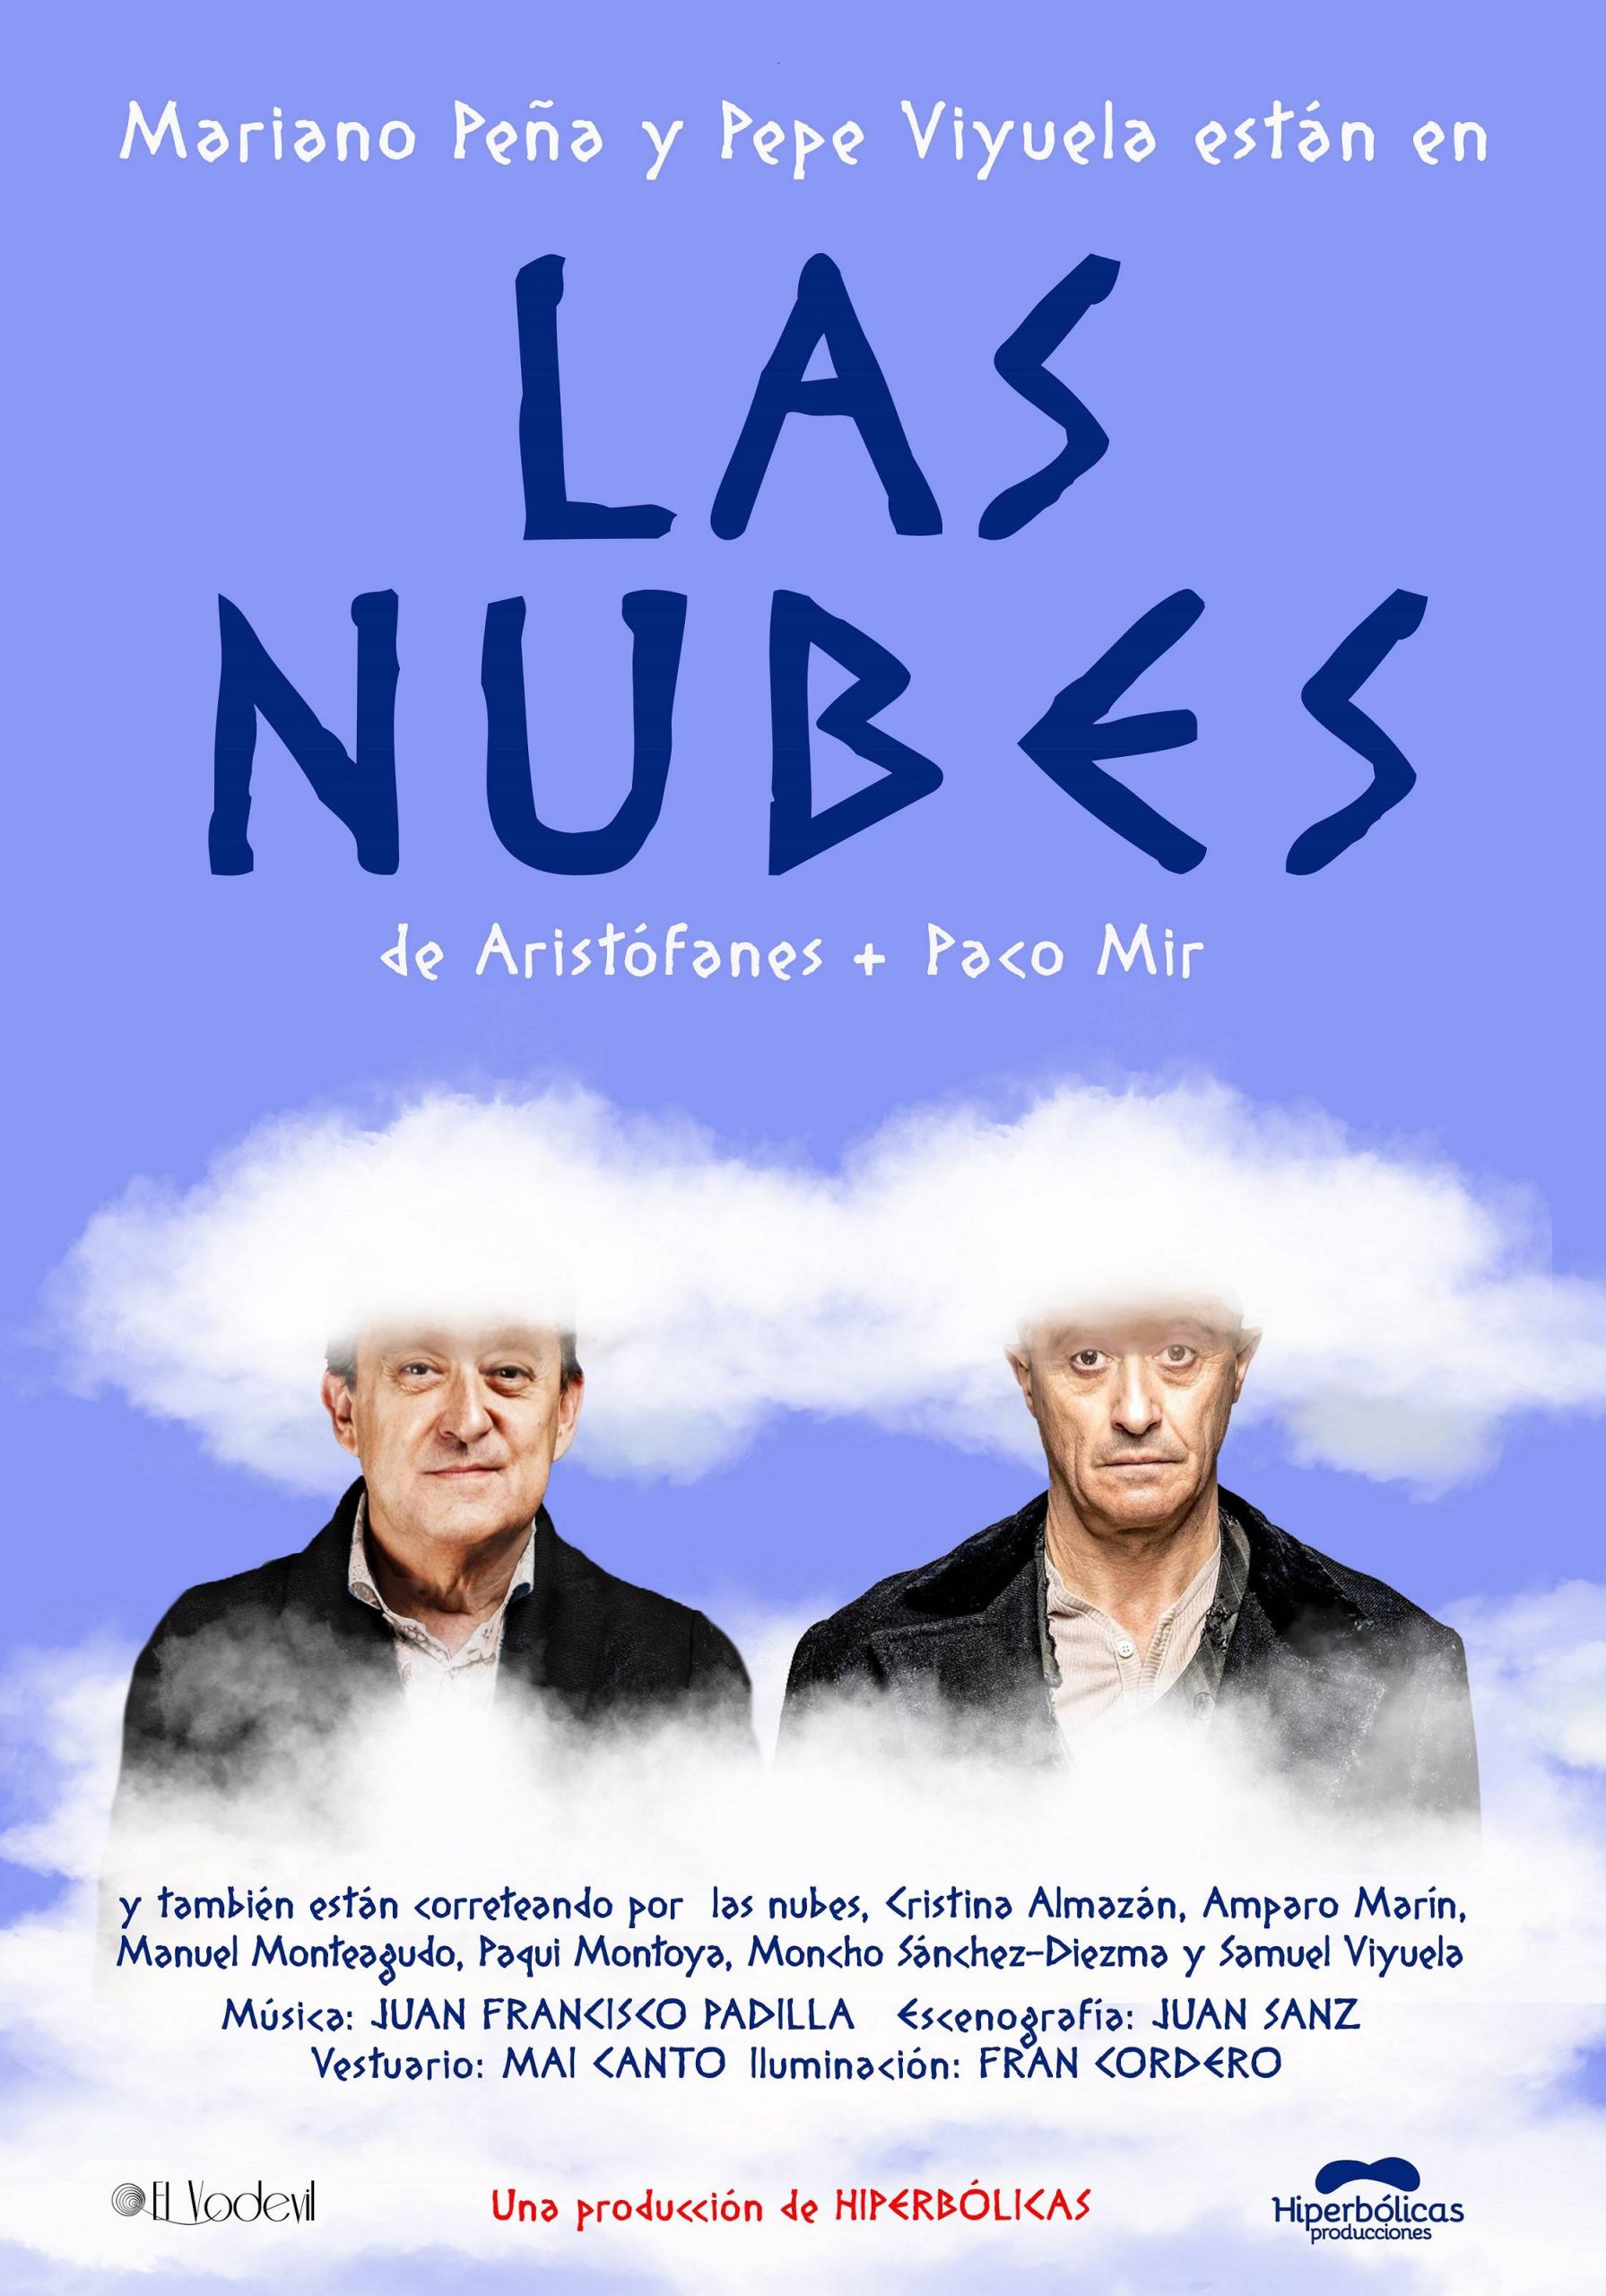 ‘Las Nubes’ con Mariano Peña y Pepe Viyuela - 20 y 21 sept